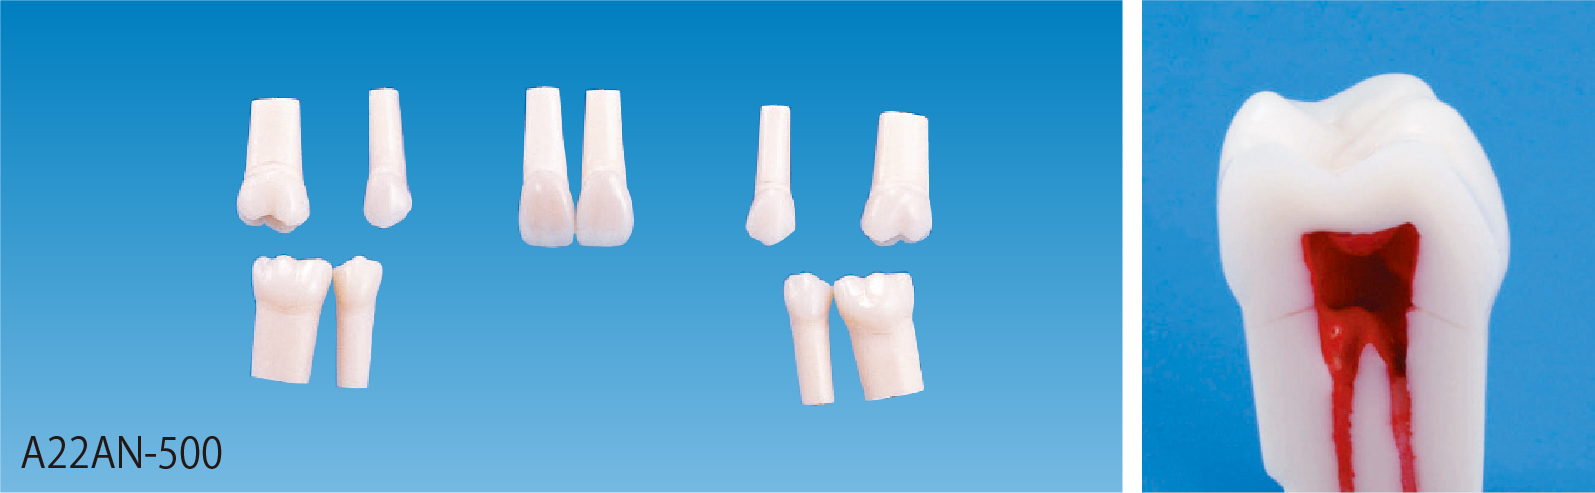 歯内療法実習用模型歯 [A22AN-500]